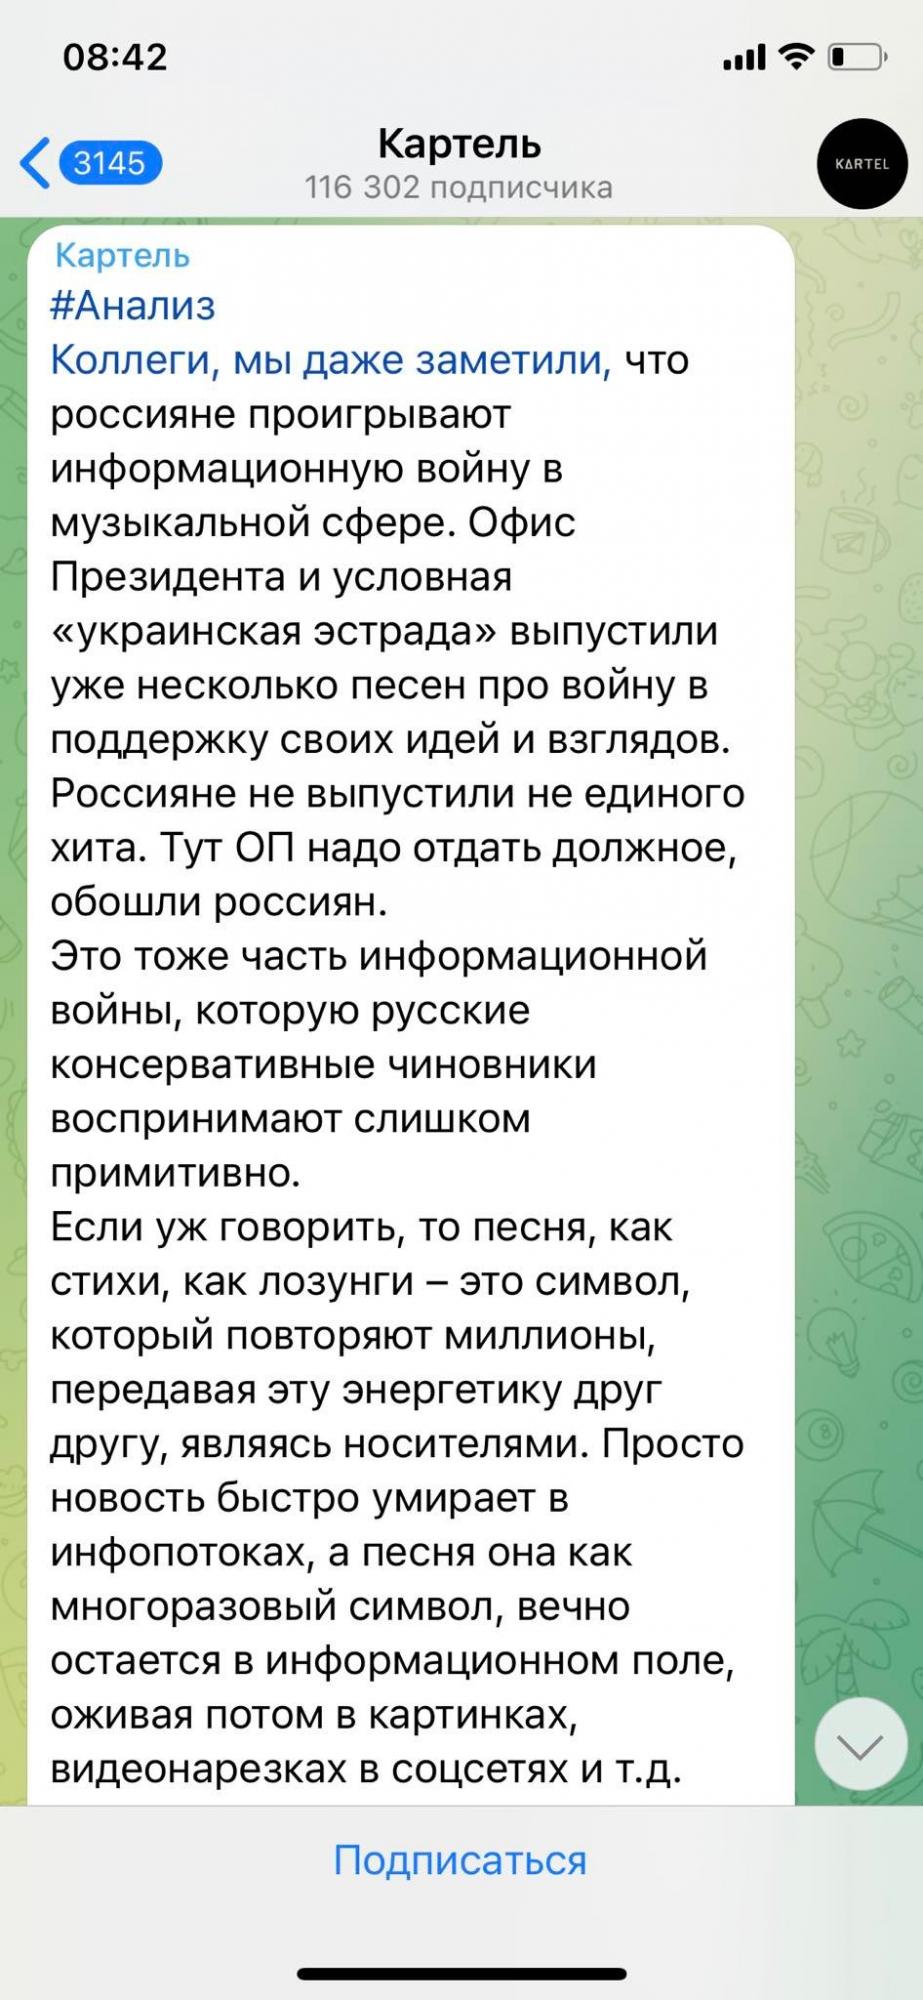 Как пишется телеграмм по русски фото 14